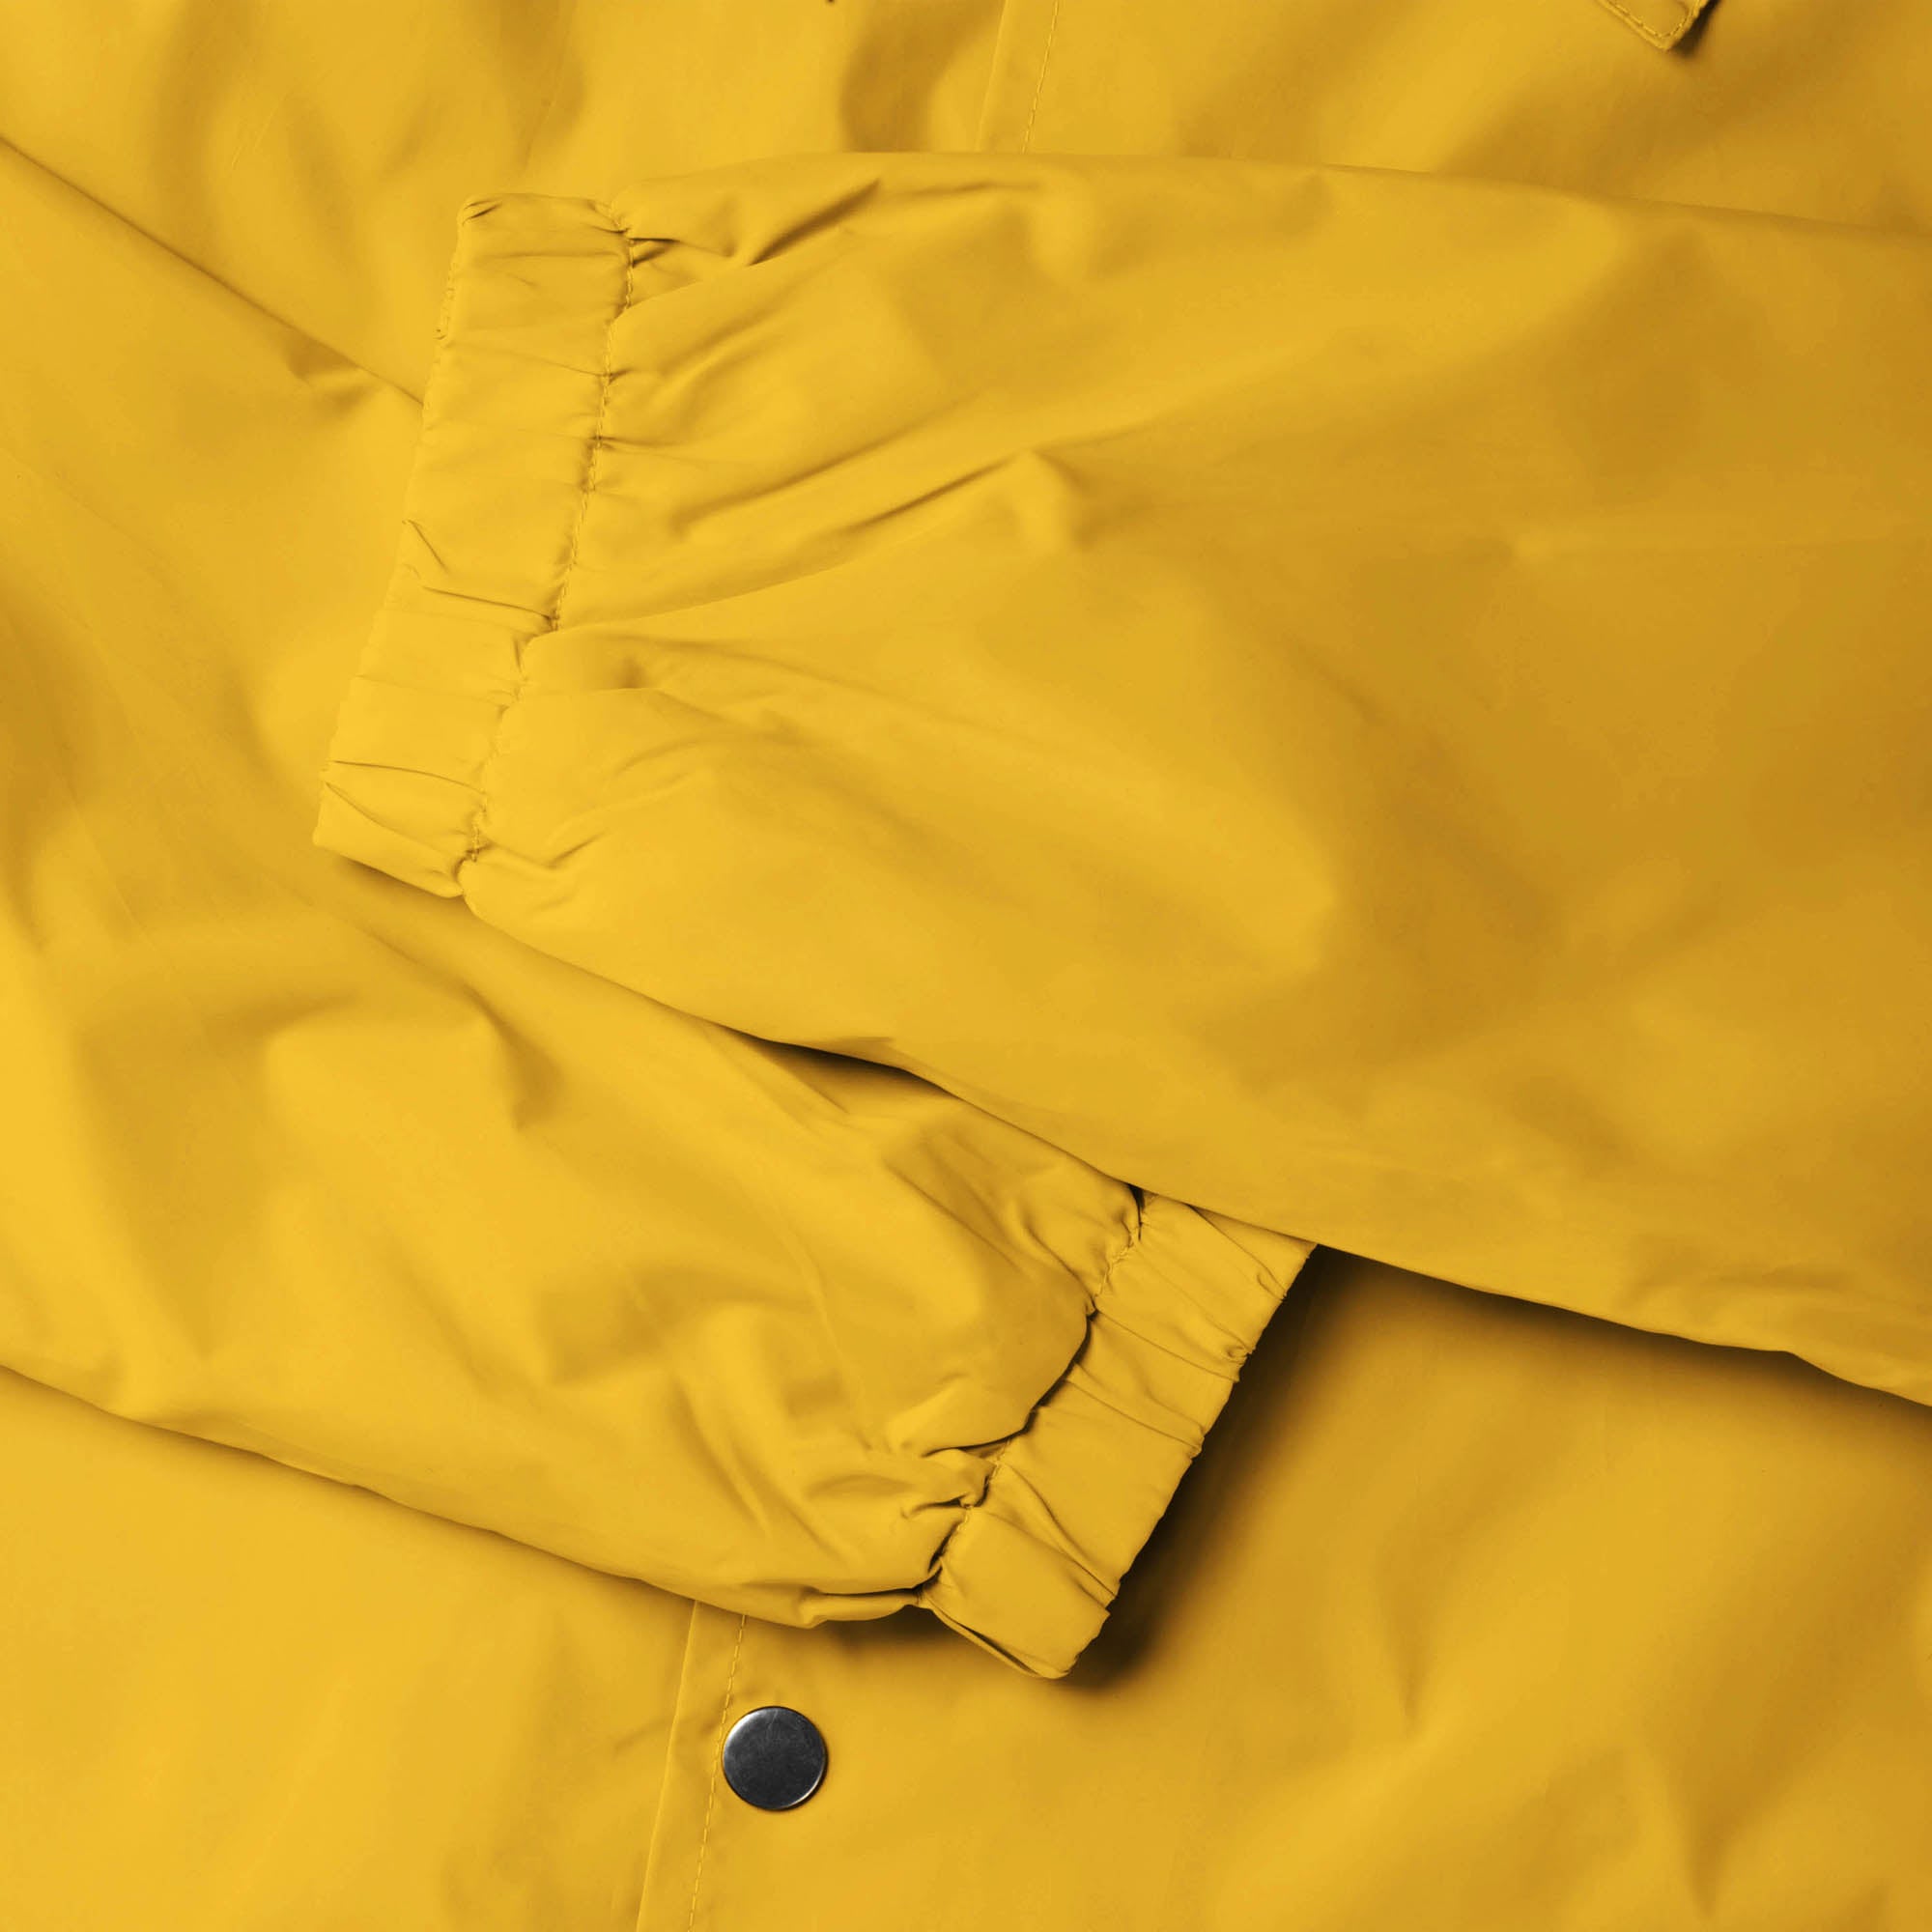 waterproof jacket_waterproofs_mens waterproof jacket_best rain jacket_lightweight waterproof jacket_water resistant jacket_Yellow